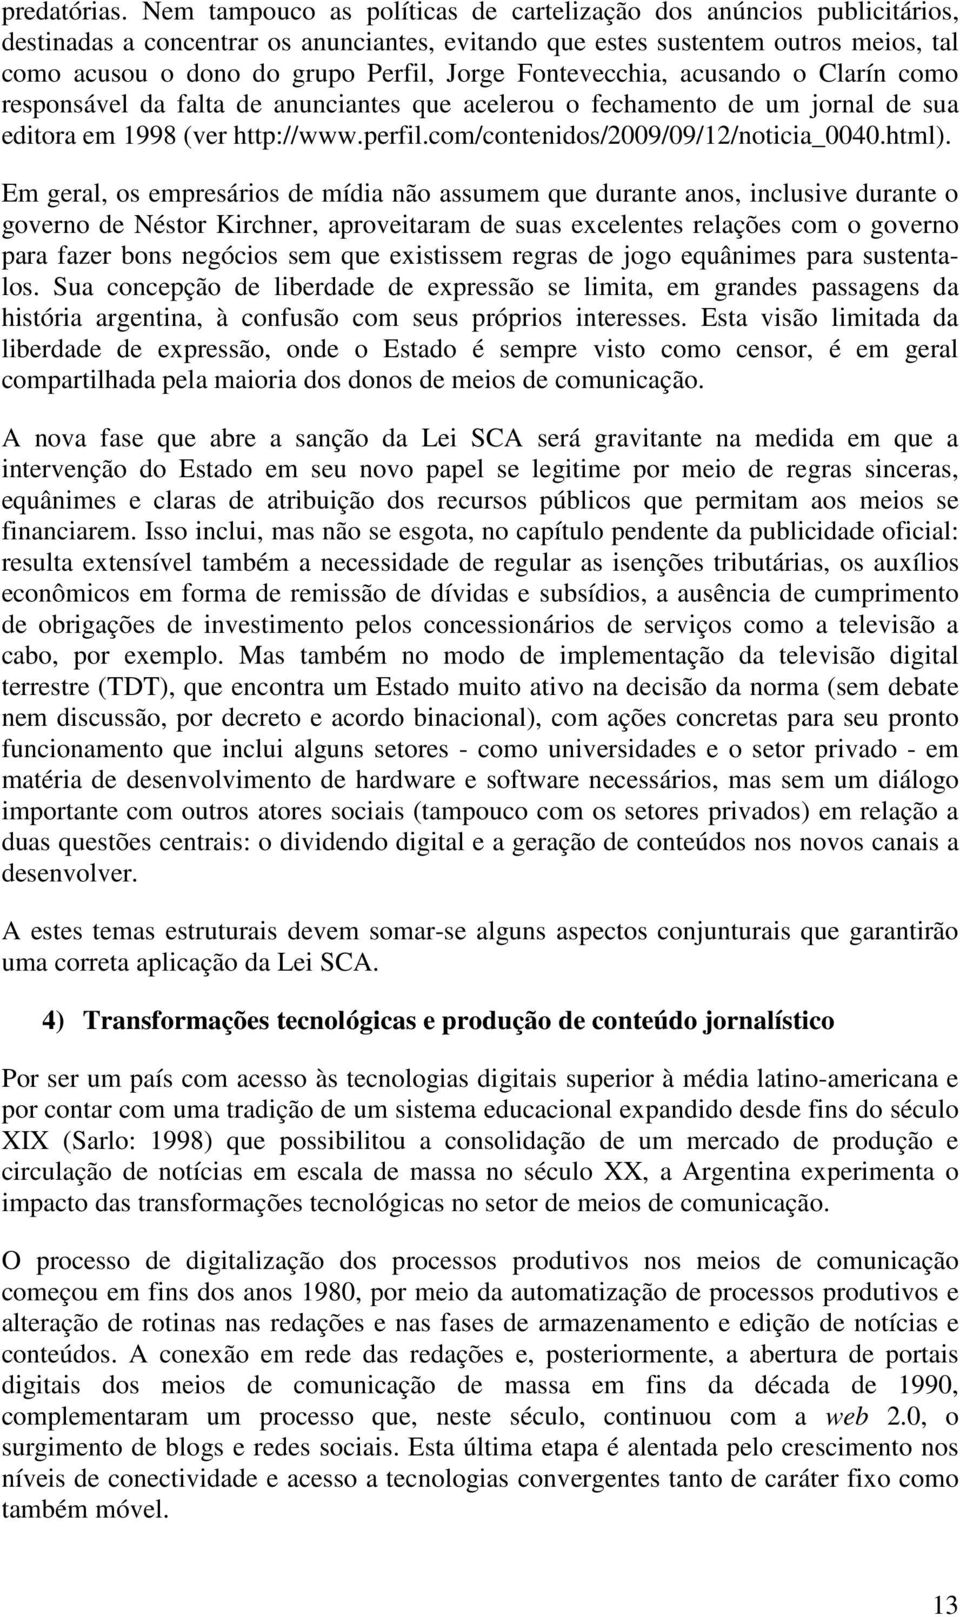 Fontevecchia, acusando o Clarín como responsável da falta de anunciantes que acelerou o fechamento de um jornal de sua editora em 1998 (ver http://www.perfil.com/contenidos/2009/09/12/noticia_0040.